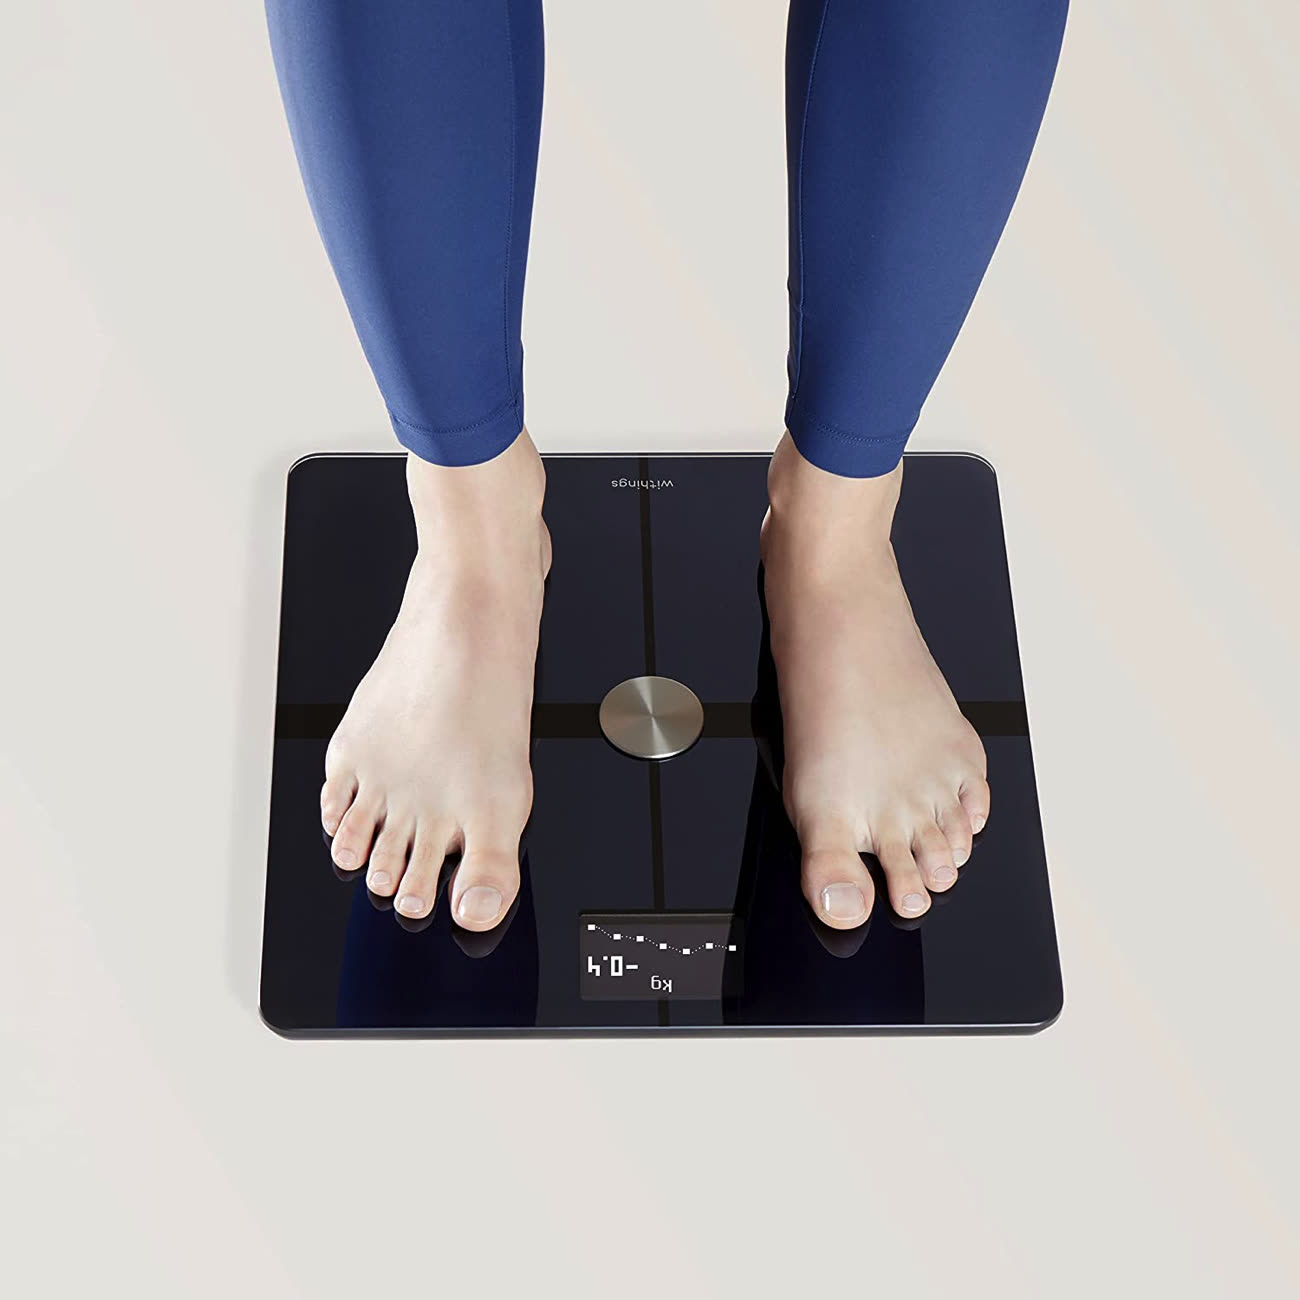 Withings Body+ : Test de la balance connectée la plus populaire